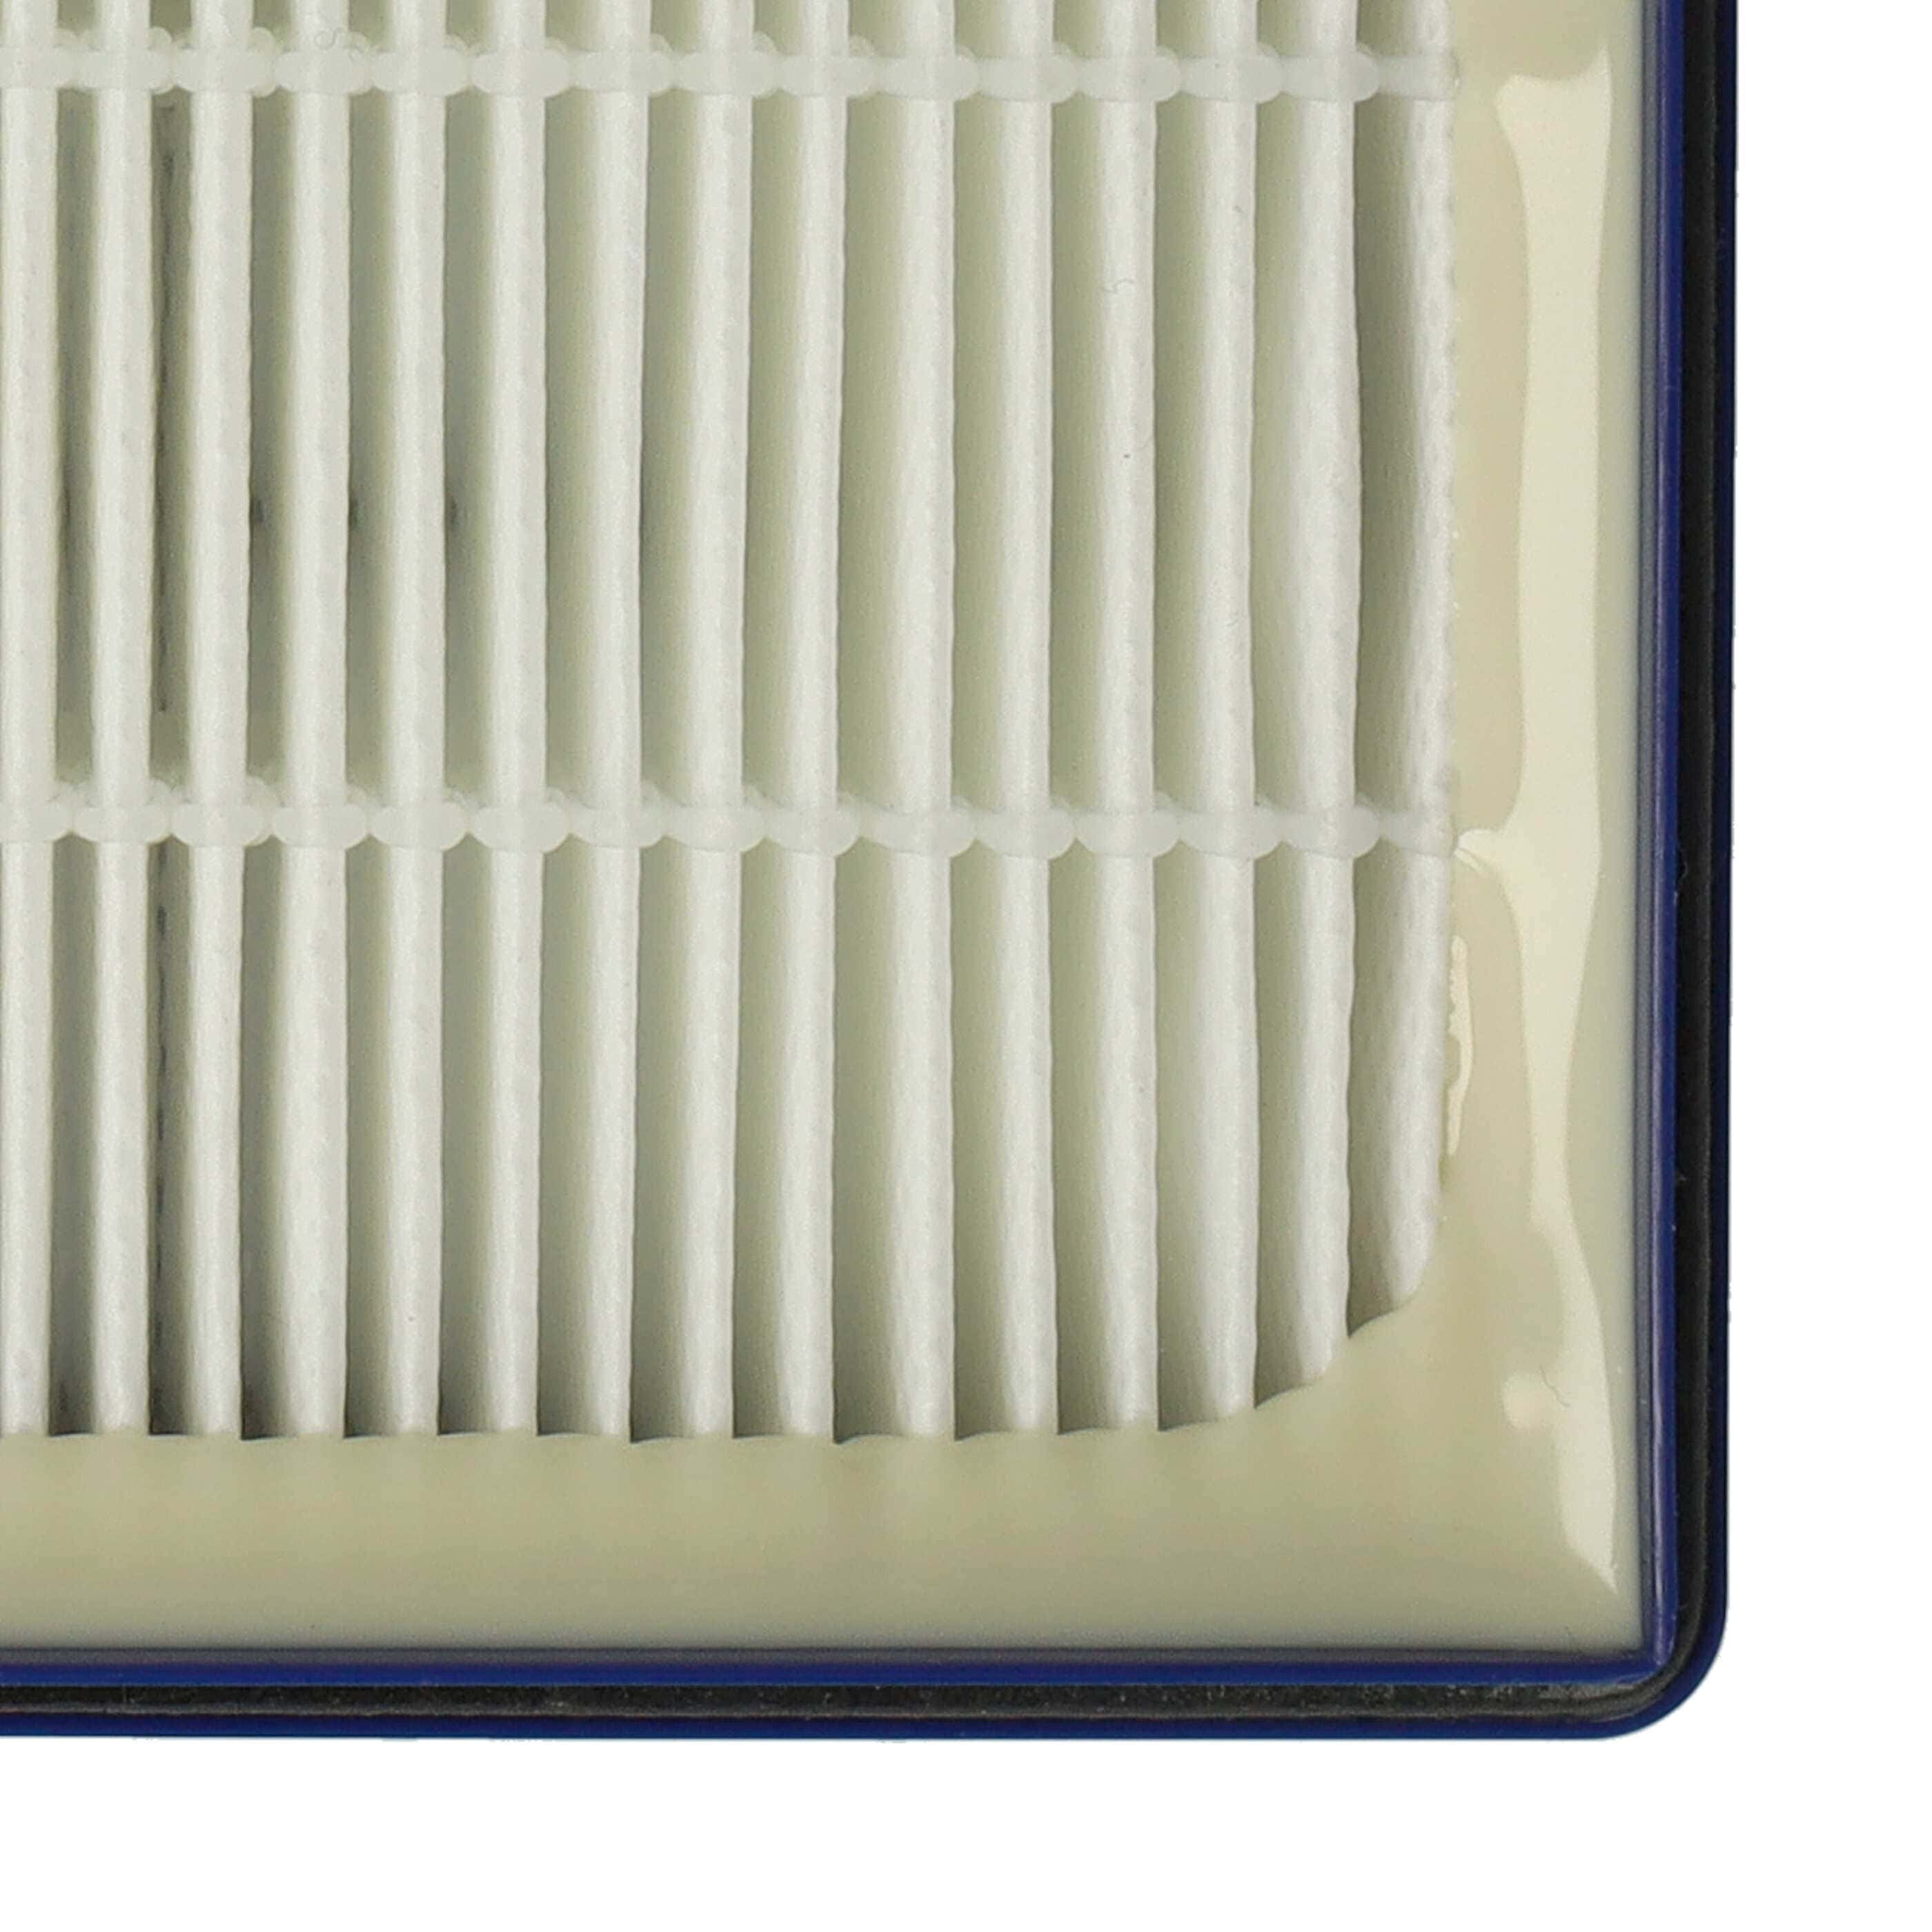 Filtre remplace Nilfisk 147 0432 500 pour aspirateur - filtre HEPA H12